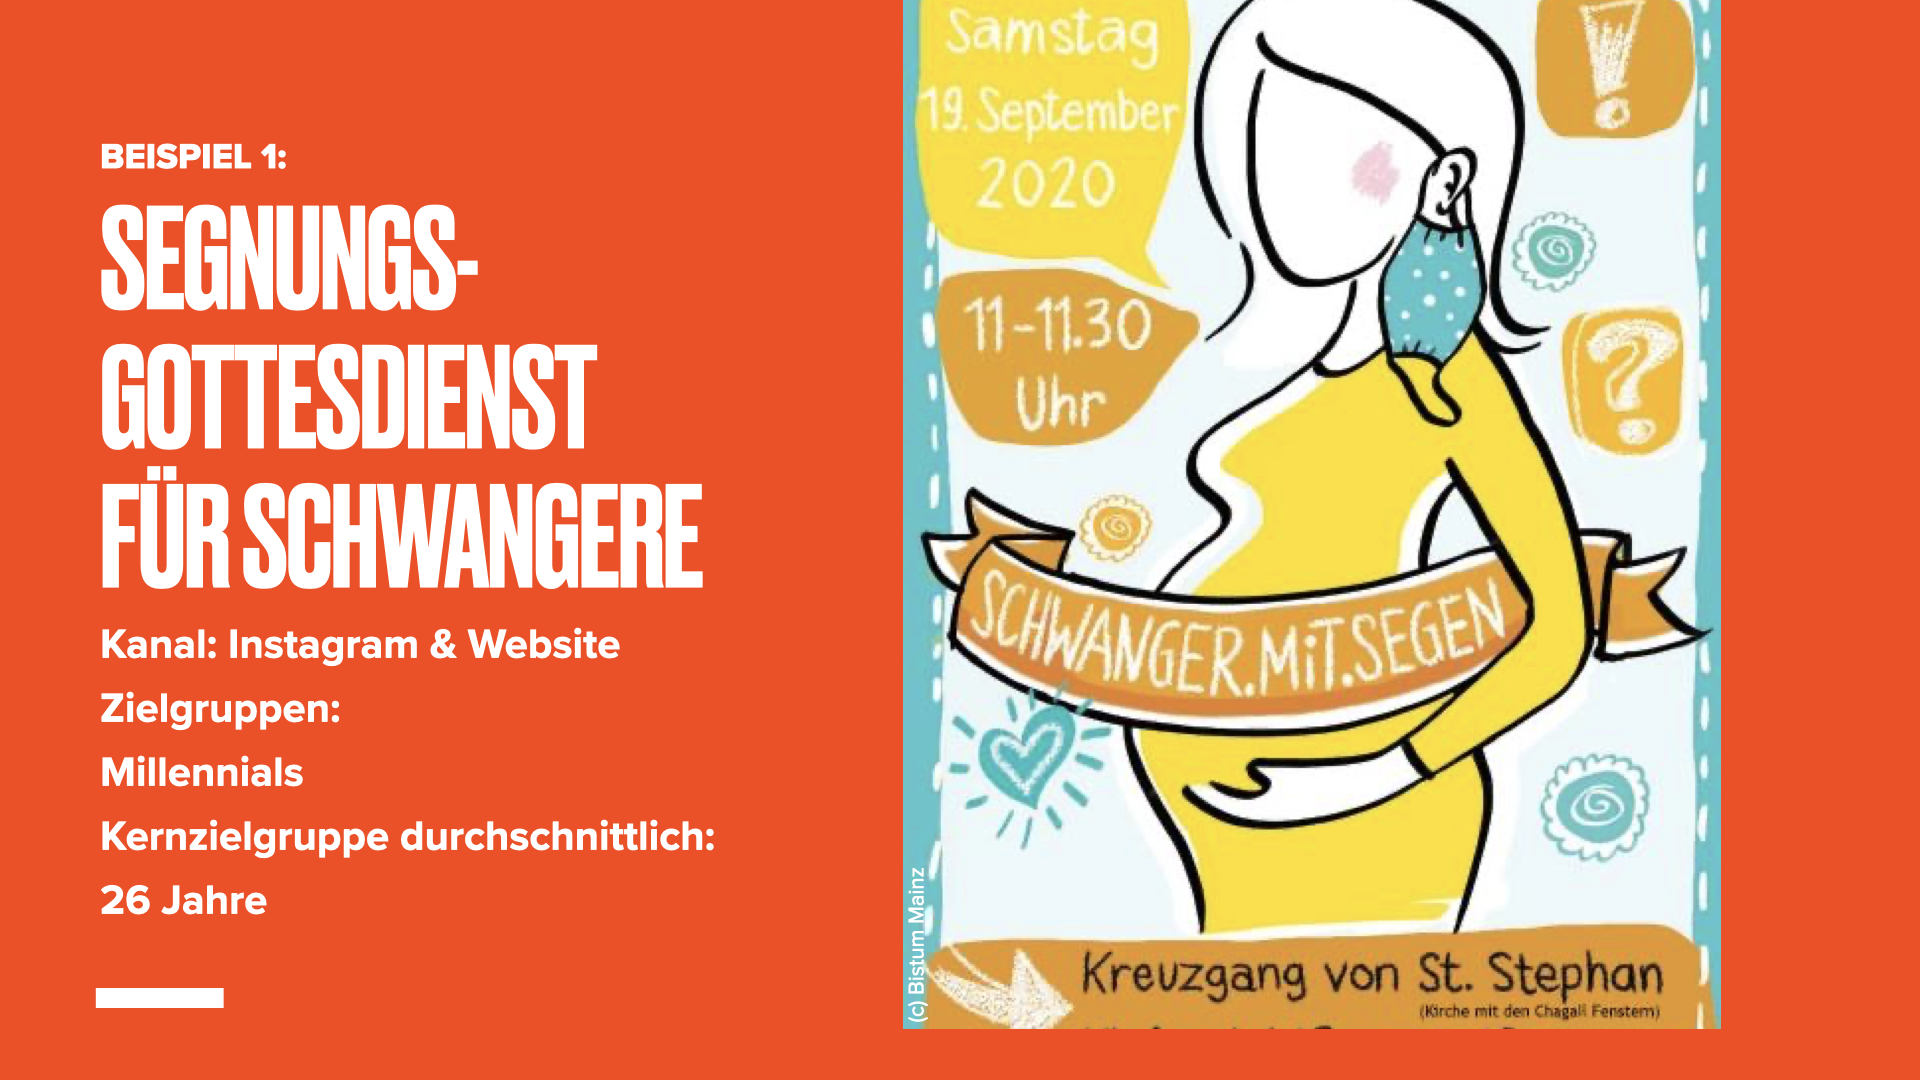 Briefing Bistum Mainz ÖA Wirksam kommunizieren.004 (c) Bistum Mainz | Öffentlichkeitsarbeit